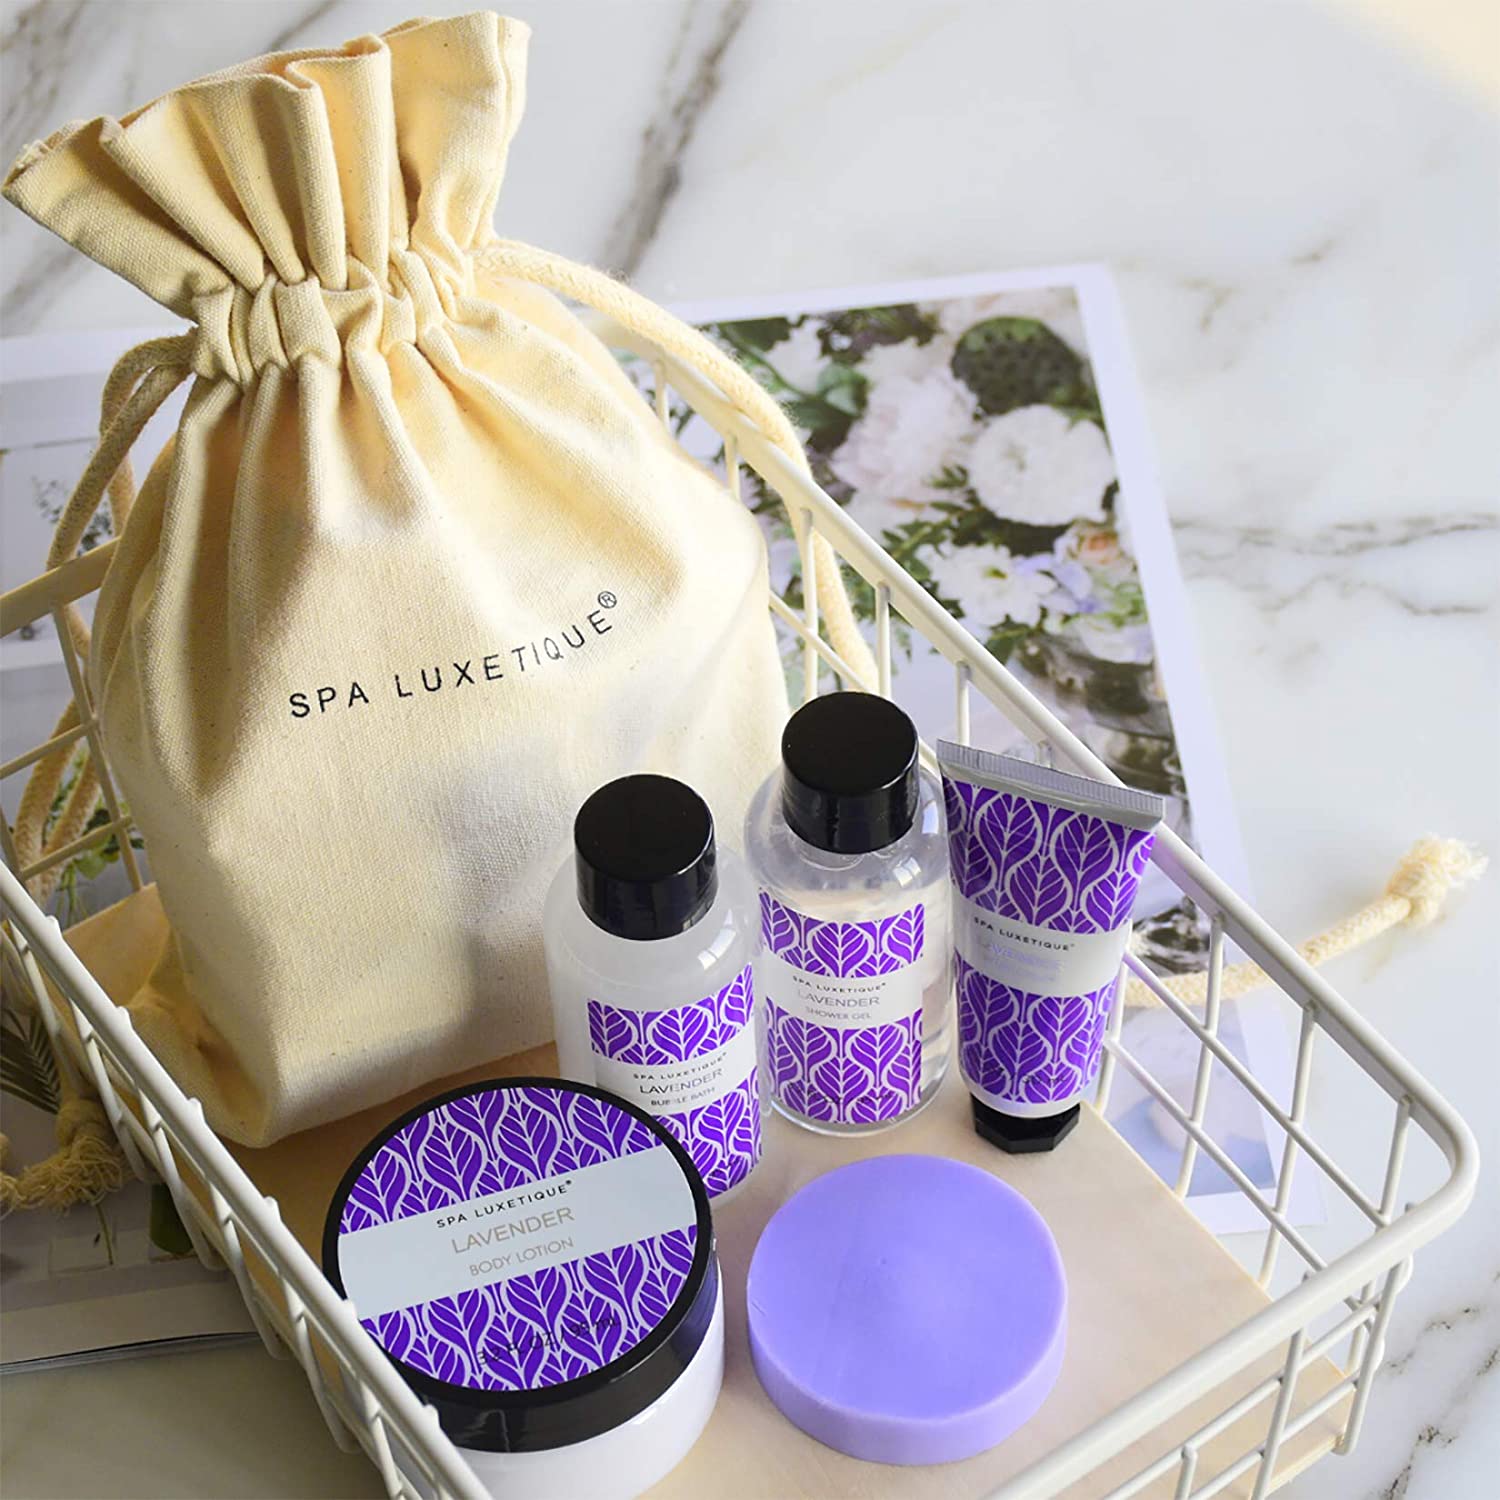 Spa Luxetique Gift Sets Lavender Bath Set